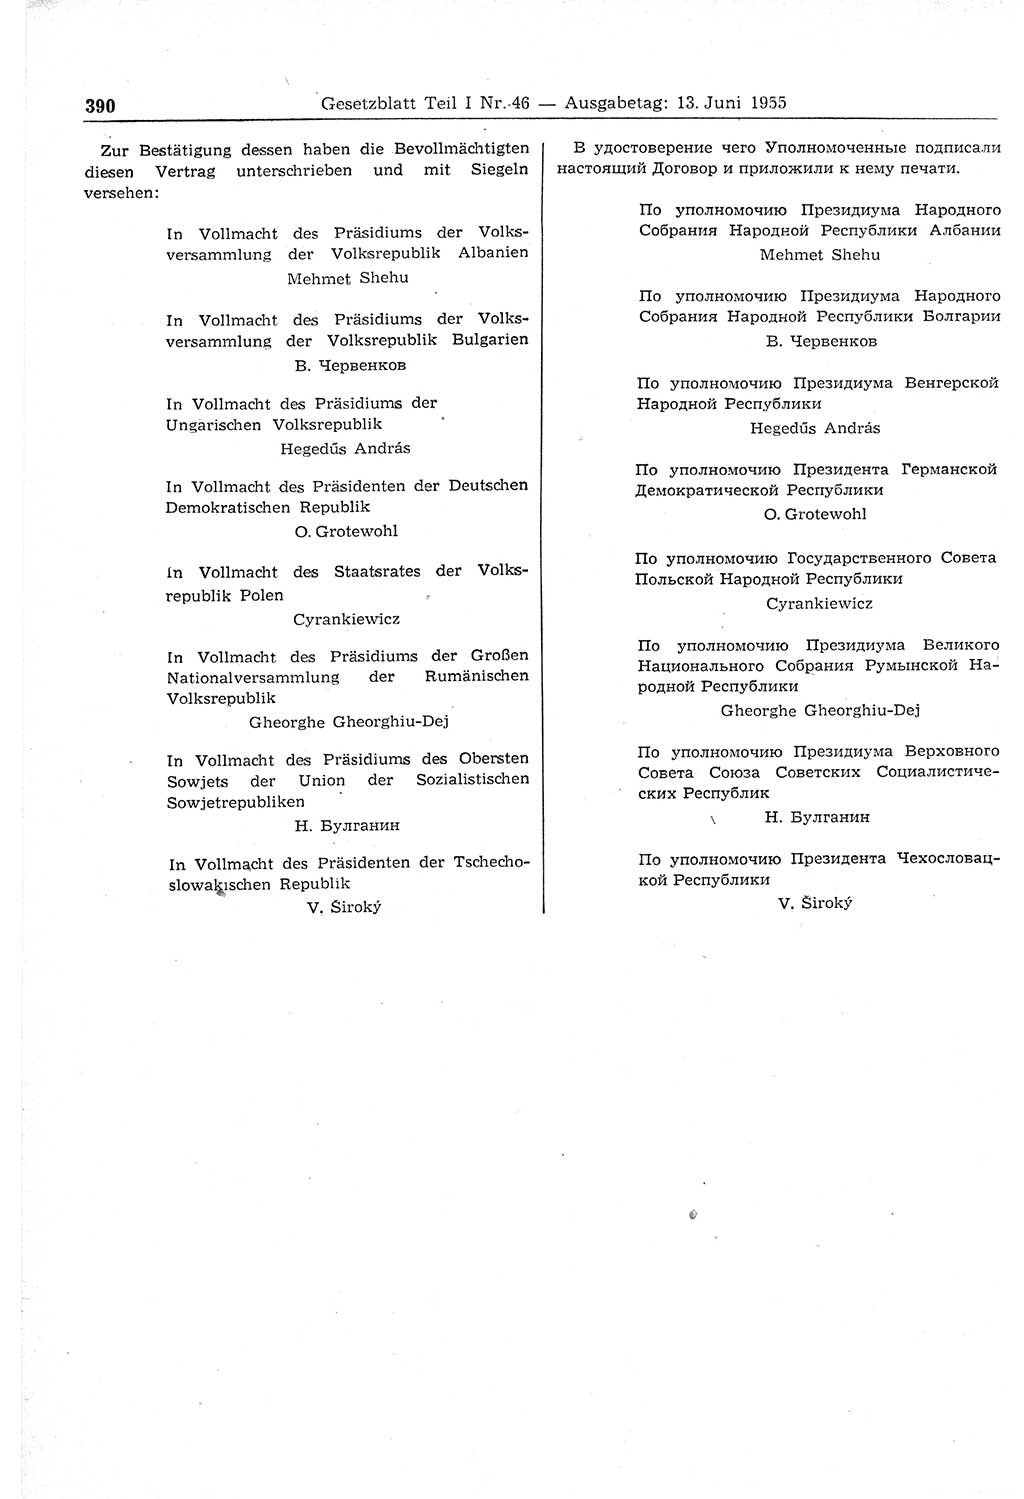 Gesetzblatt (GBl.) der Deutschen Demokratischen Republik (DDR) Teil Ⅰ 1955, Seite 390 (GBl. DDR Ⅰ 1955, S. 390)